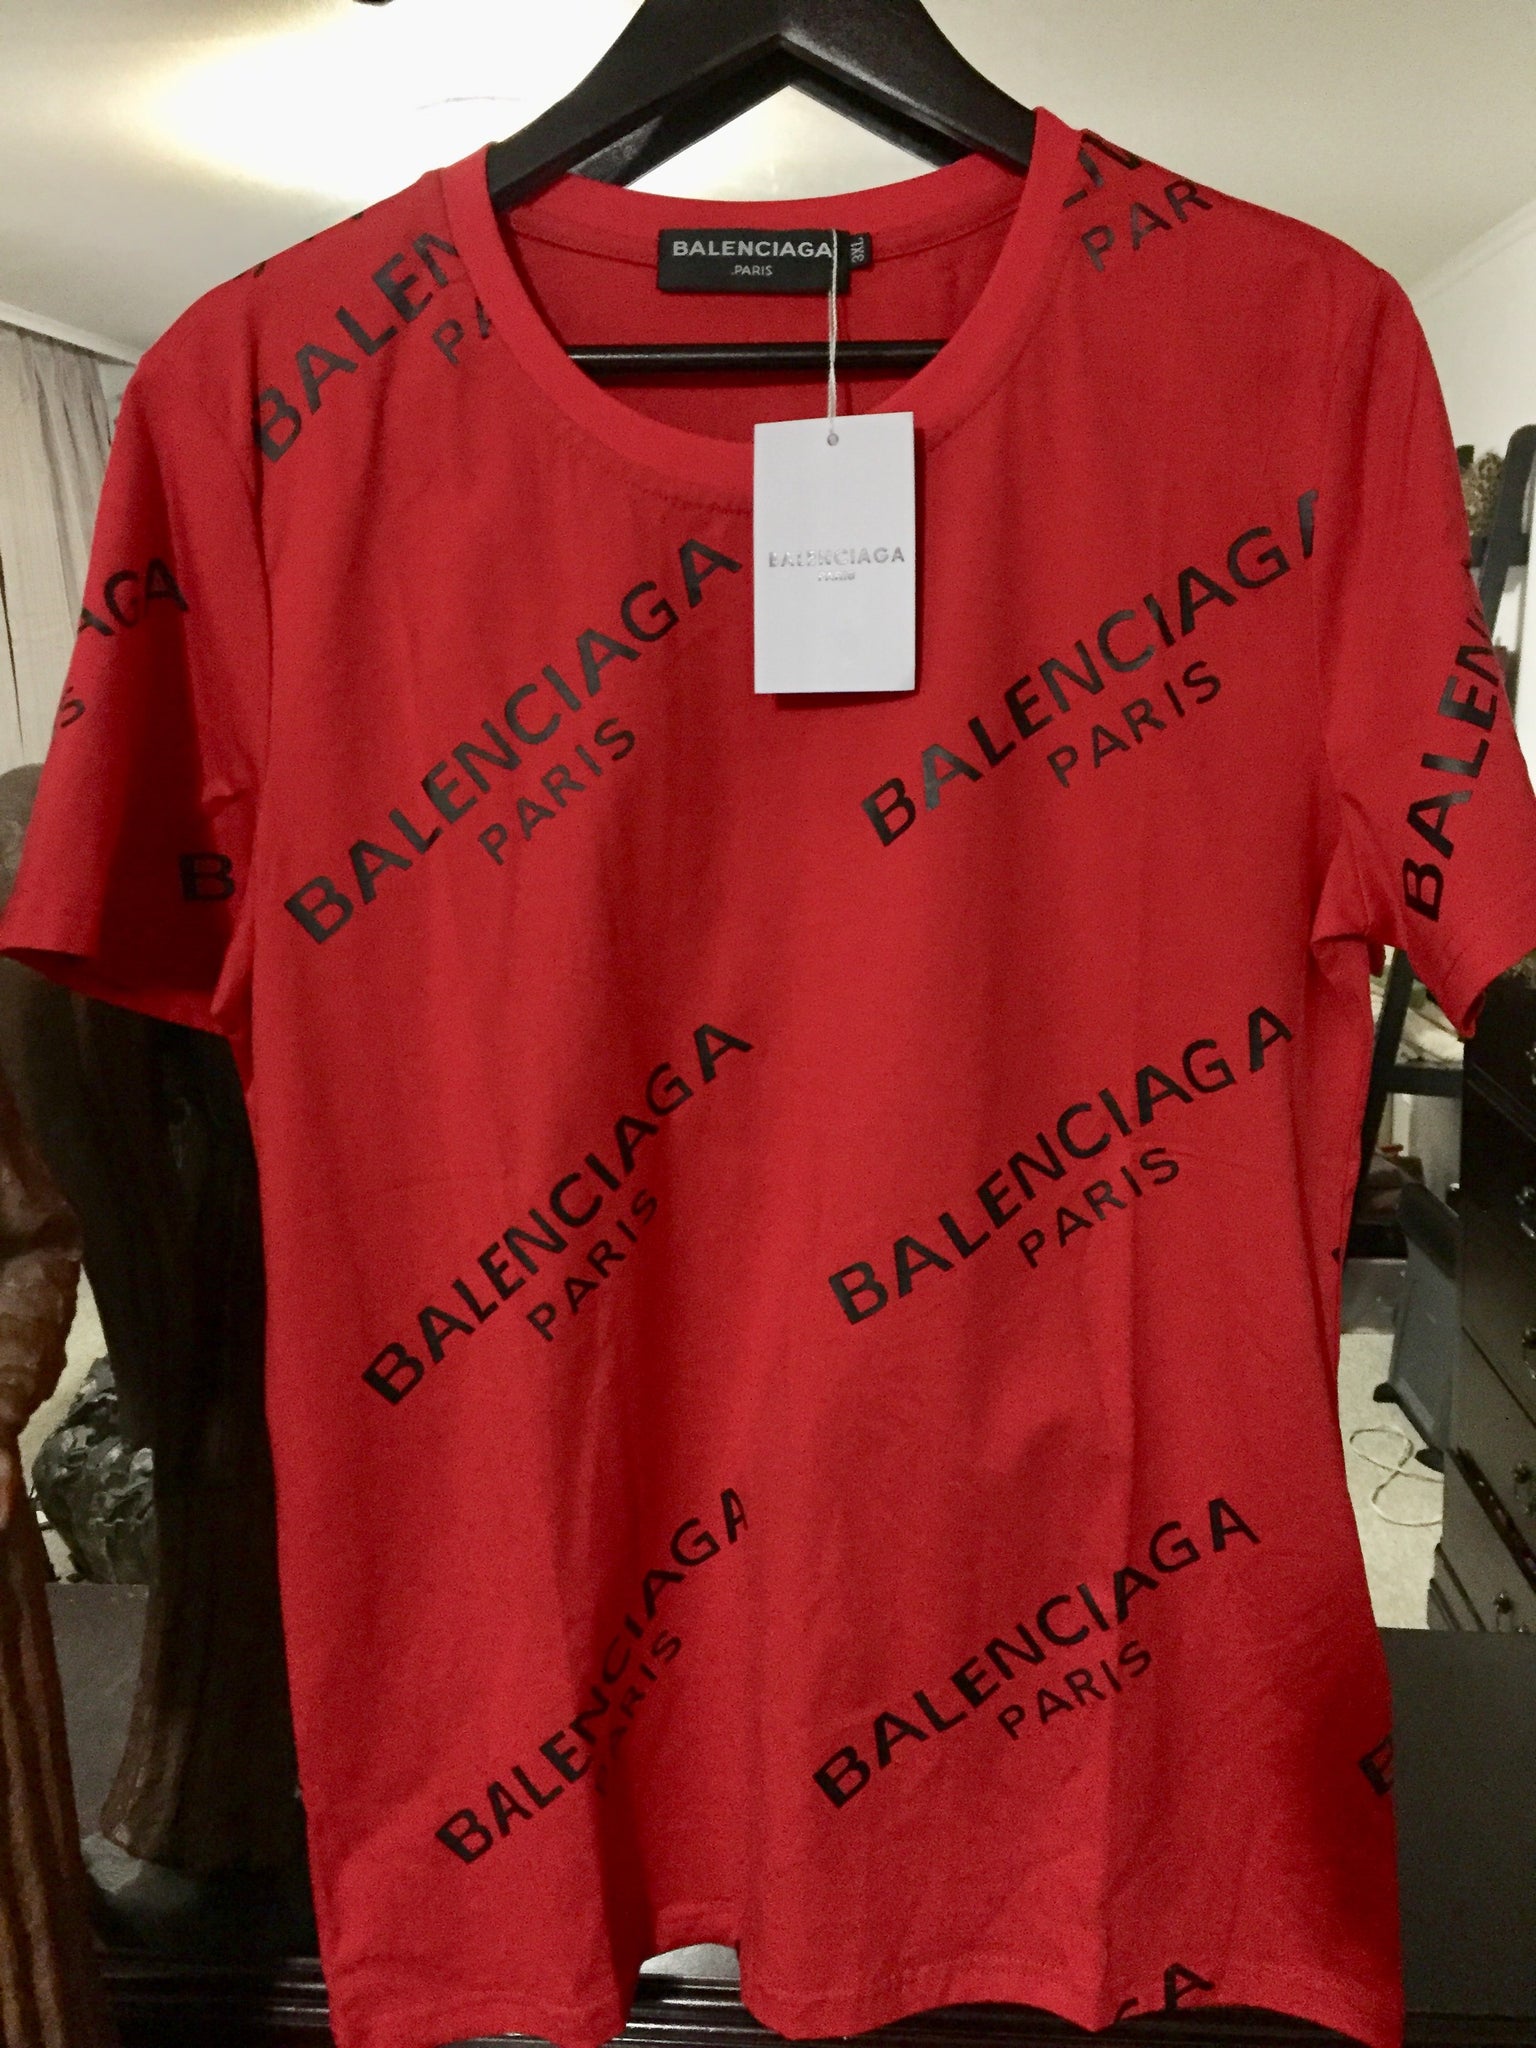 balenciaga t shirt 2017 price